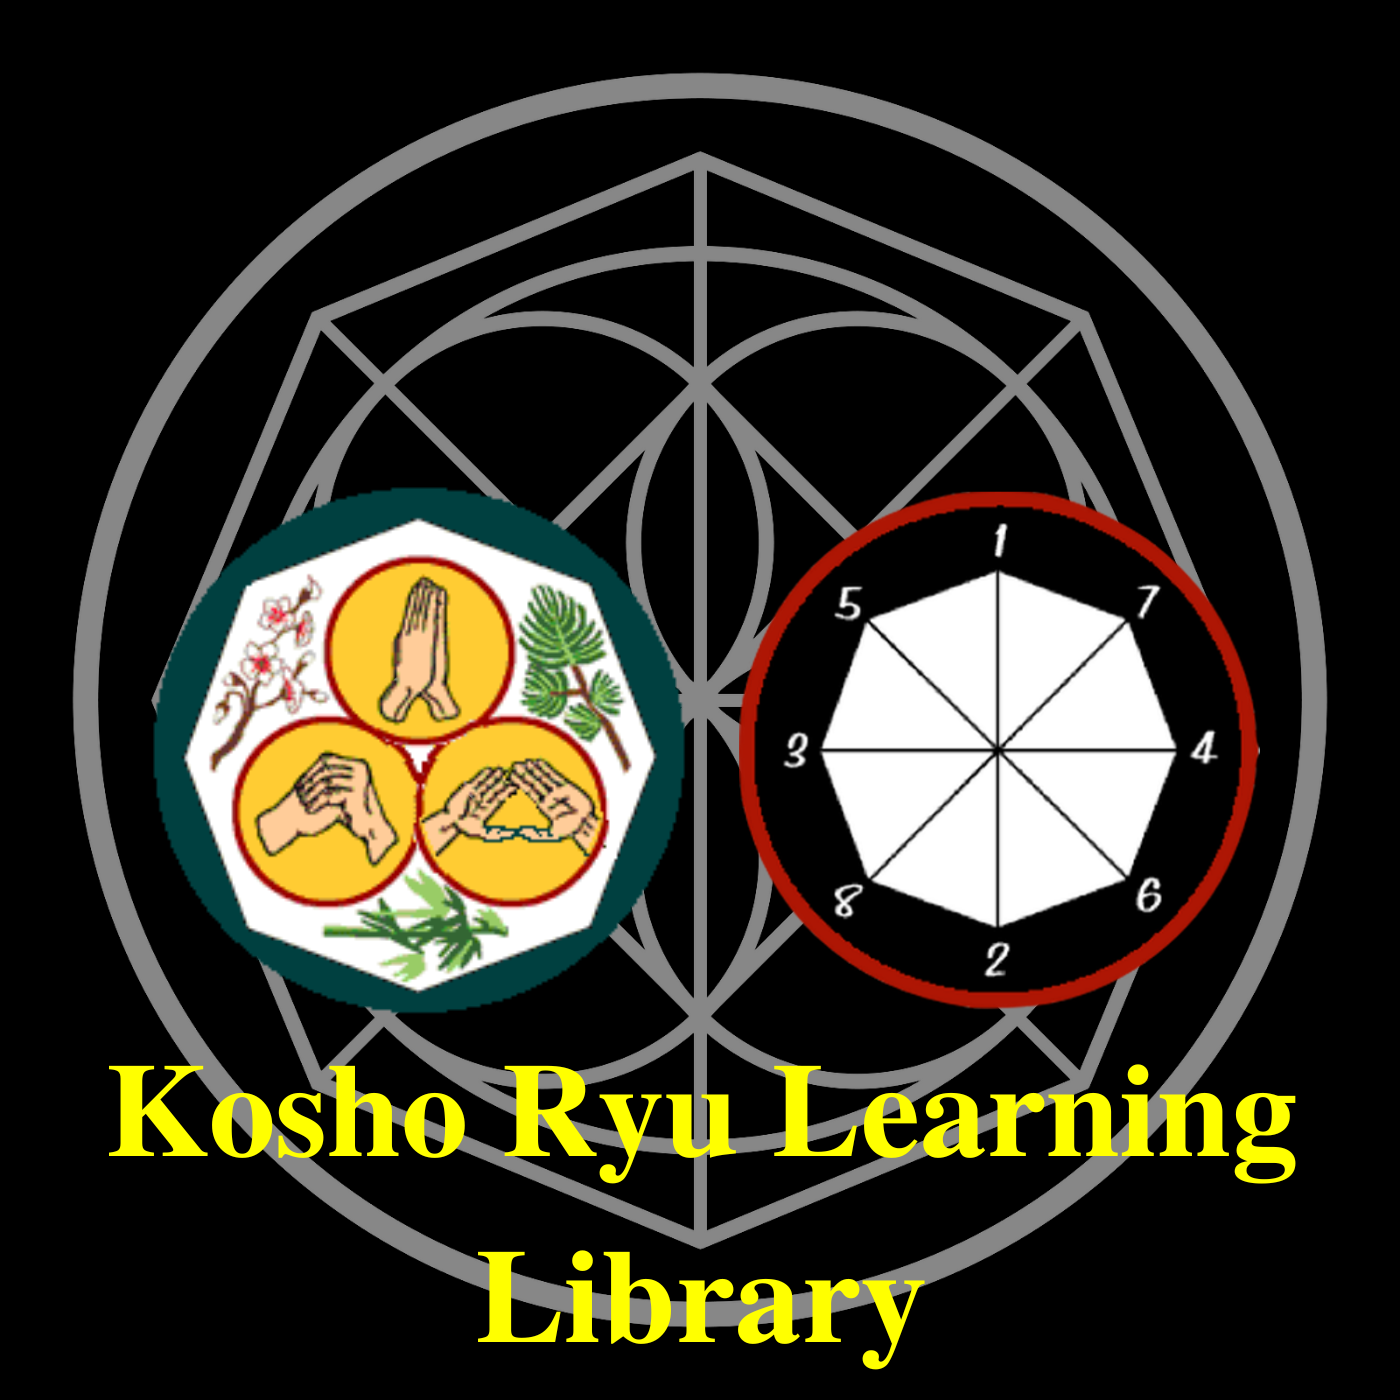 * Kosho Ryu Learning Library